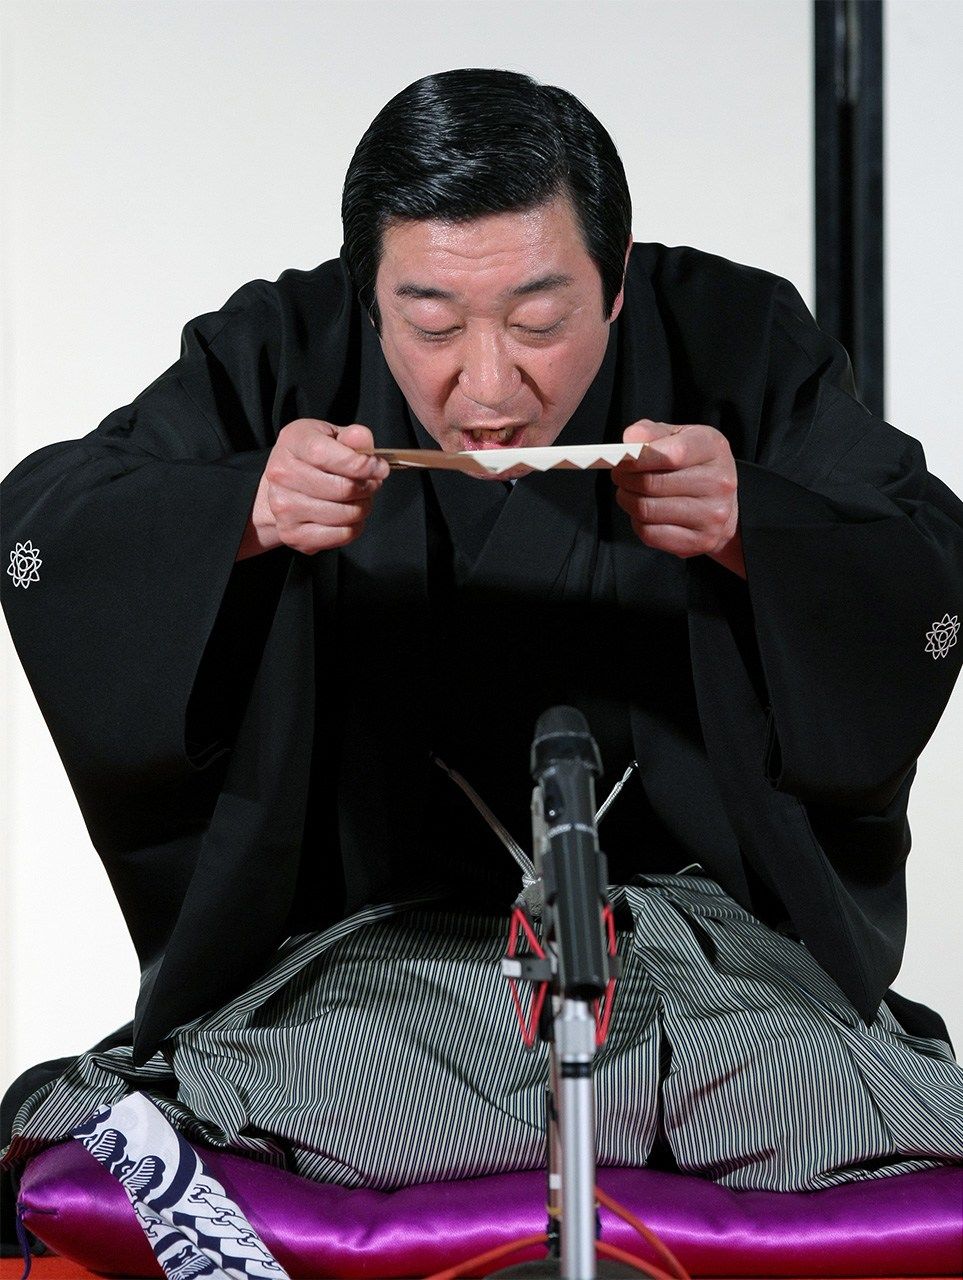    يستخدم سانيوتيي هوراكو مؤدي فن راكوغو مروحة سينسو وكأنها وعاء يحتوي ساكي يشرب منه بينما يروي إحدى قصصه. الصورة ملتقطة في مسرح أساكوسا تويوكان في طوكيو (© جيجي برس).